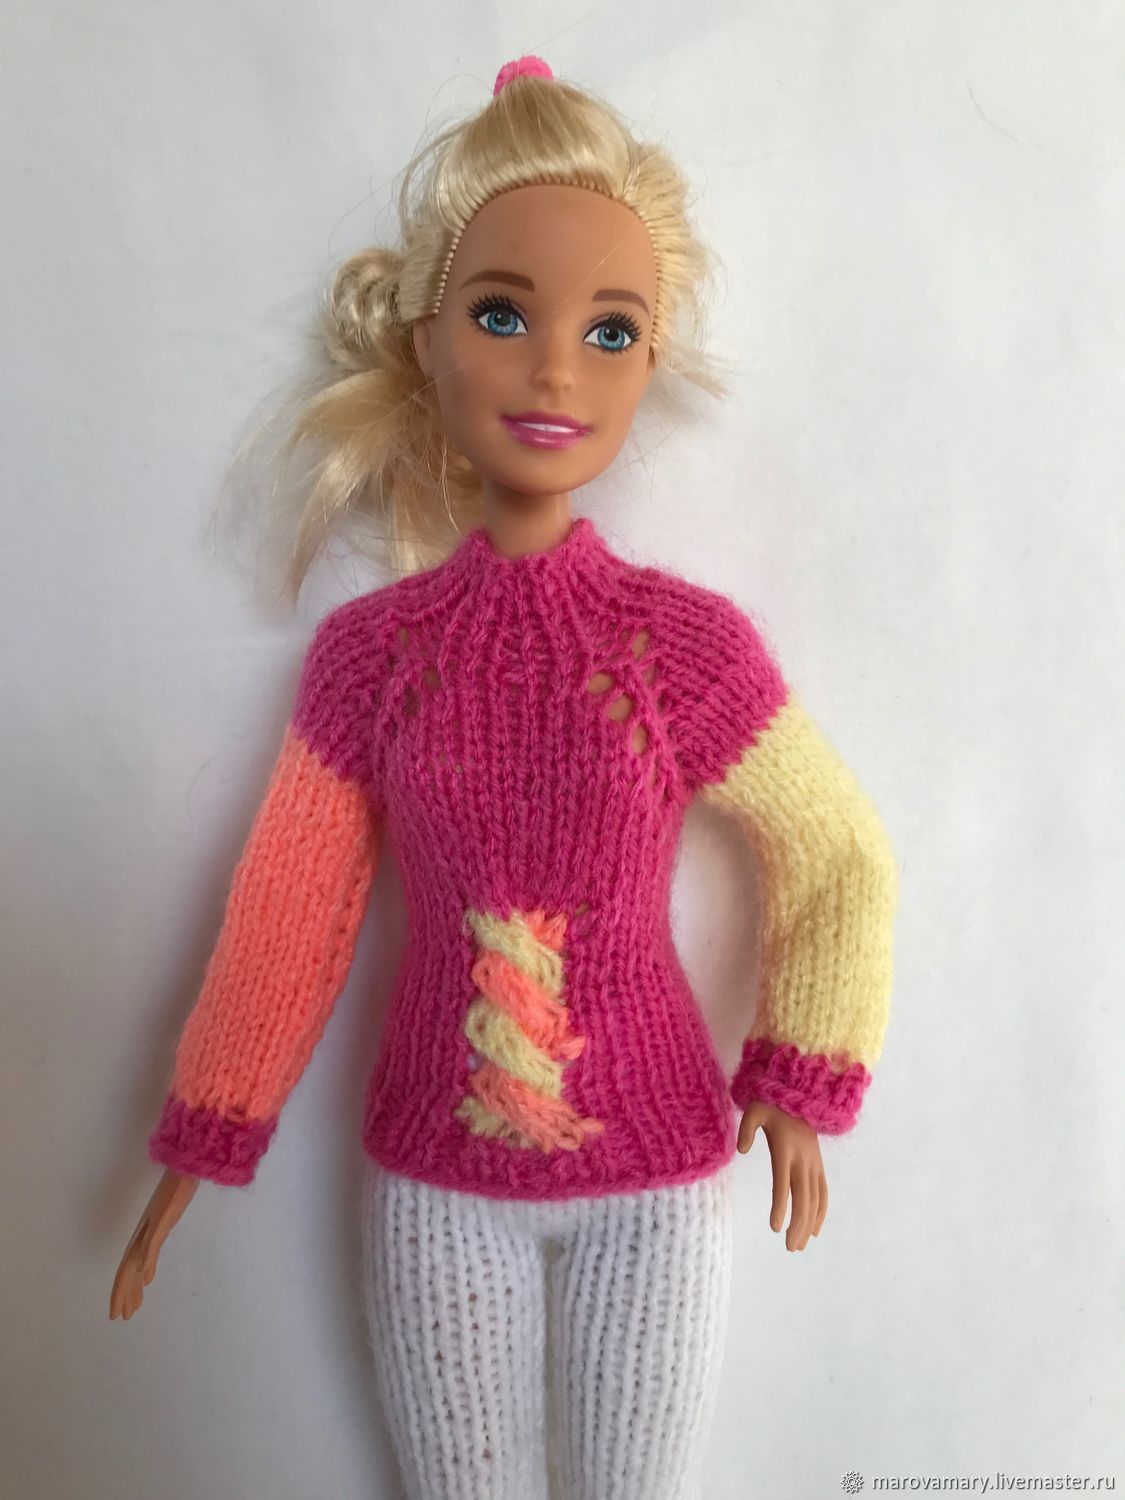 Какая самая популярная одежда для кукол формата Барби!?